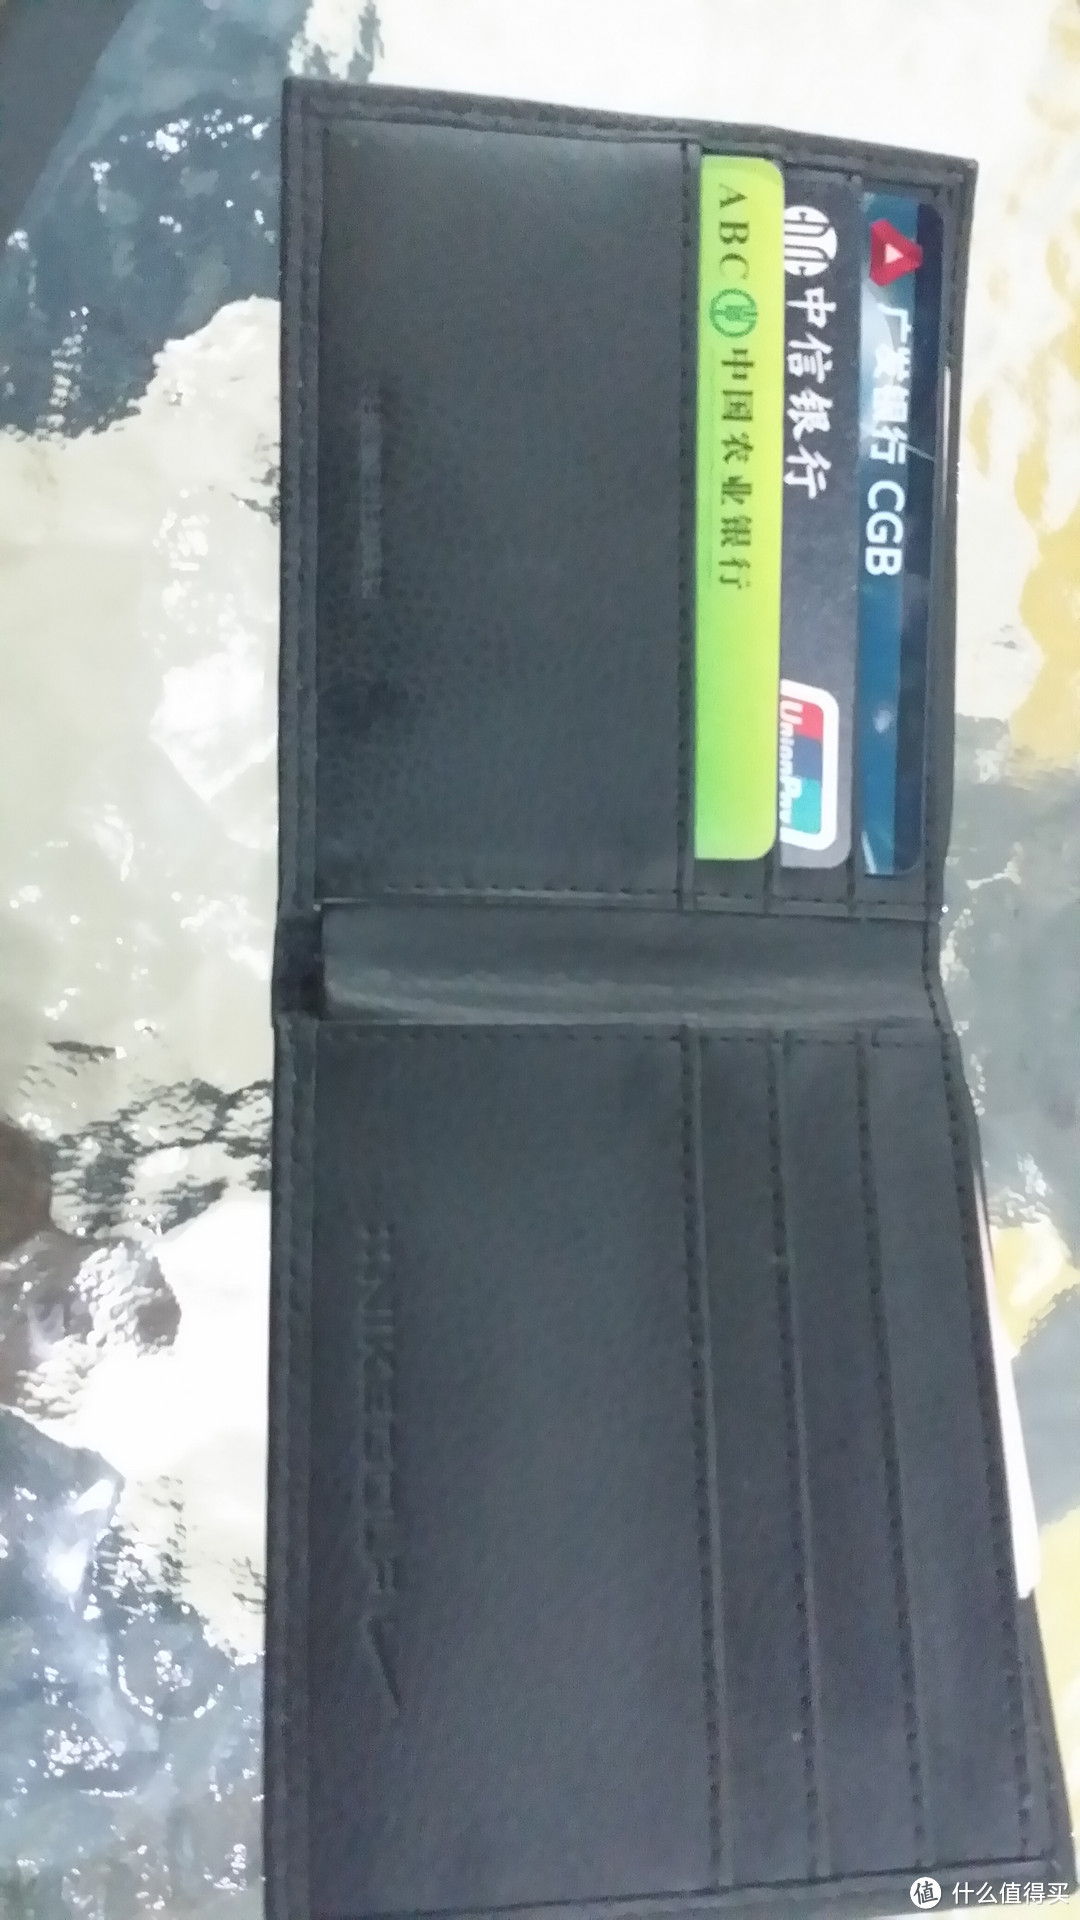 凑单品 NIKE 耐克 Web Belt/Wallet Combo 钱包+腰带套装